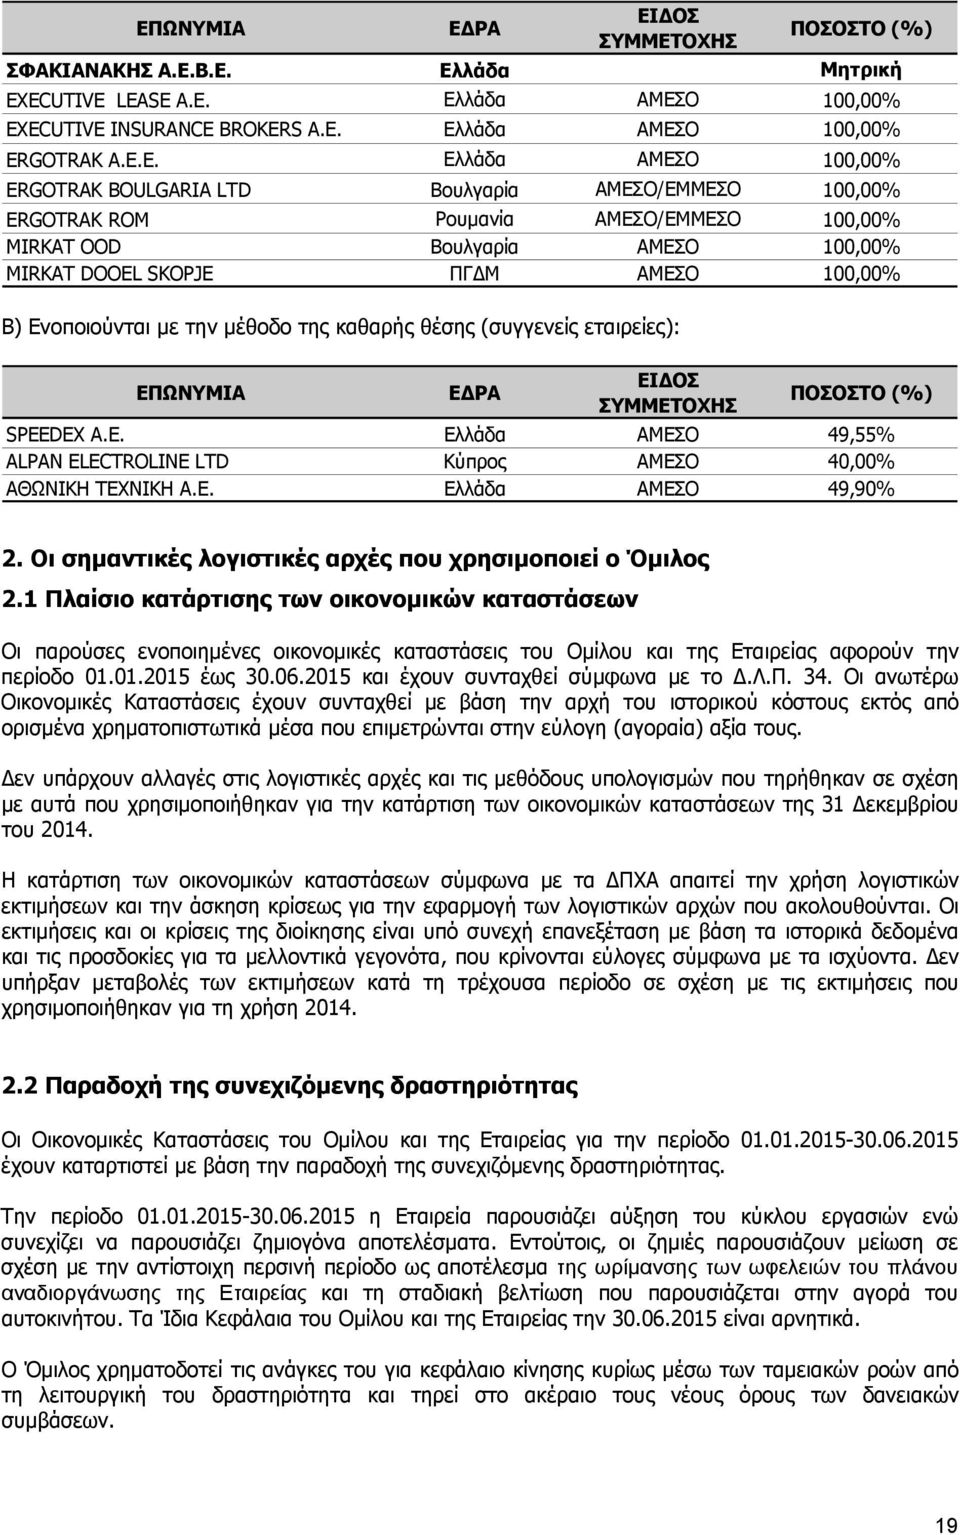 Ρουμανία ΑΜΕΣΟ/ΕΜΜΕΣΟ 100,00% MIRKAT OOD Βουλγαρία ΑΜΕΣΟ 100,00% MIRKAT DOOEL SKOPJE ΠΓΔΜ ΑΜΕΣΟ 100,00% Β) Ενοποιούνται με την μέθοδο της καθαρής θέσης (συγγενείς εταιρείες): ΕΠΩΝΥΜΙΑ ΕΔΡΑ ΕΙΔΟΣ